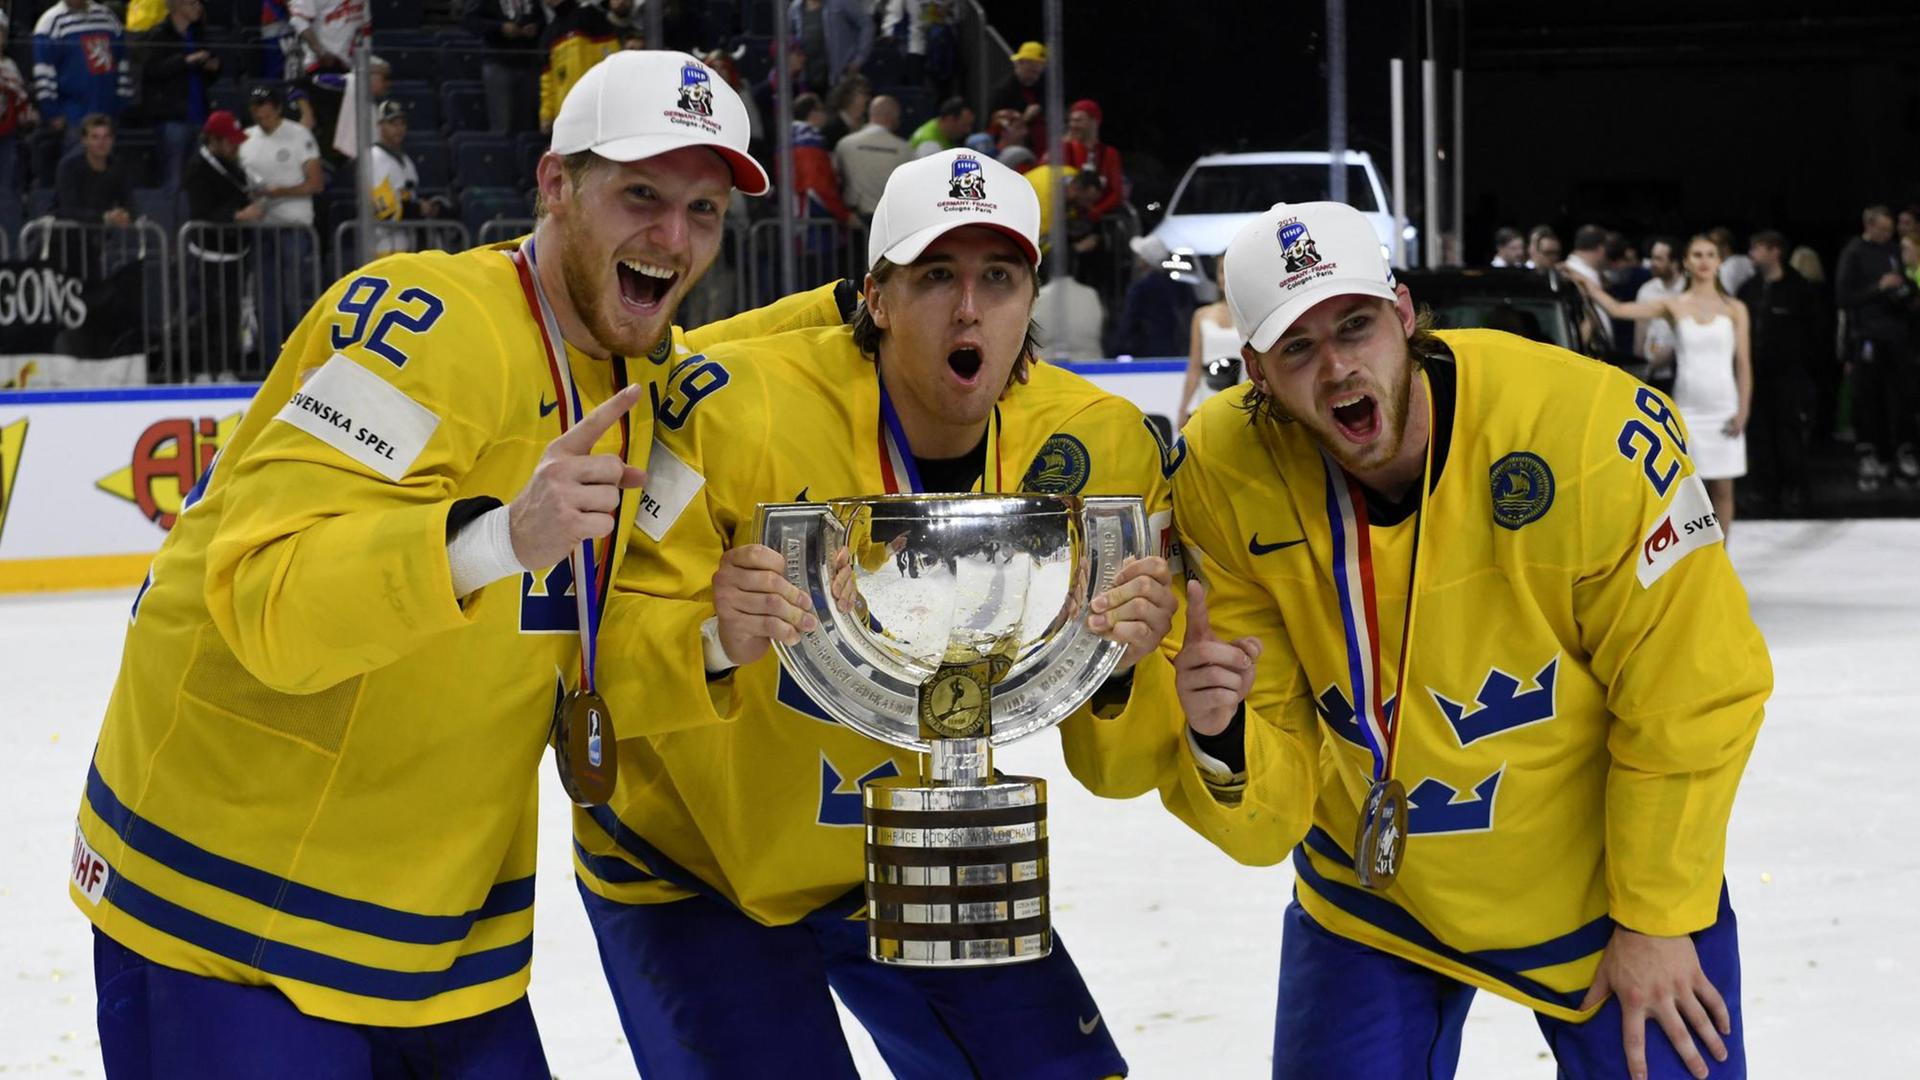 Drei schwedische Eishockey-Spieler halten den Weltmeisterschafts-Pokal.